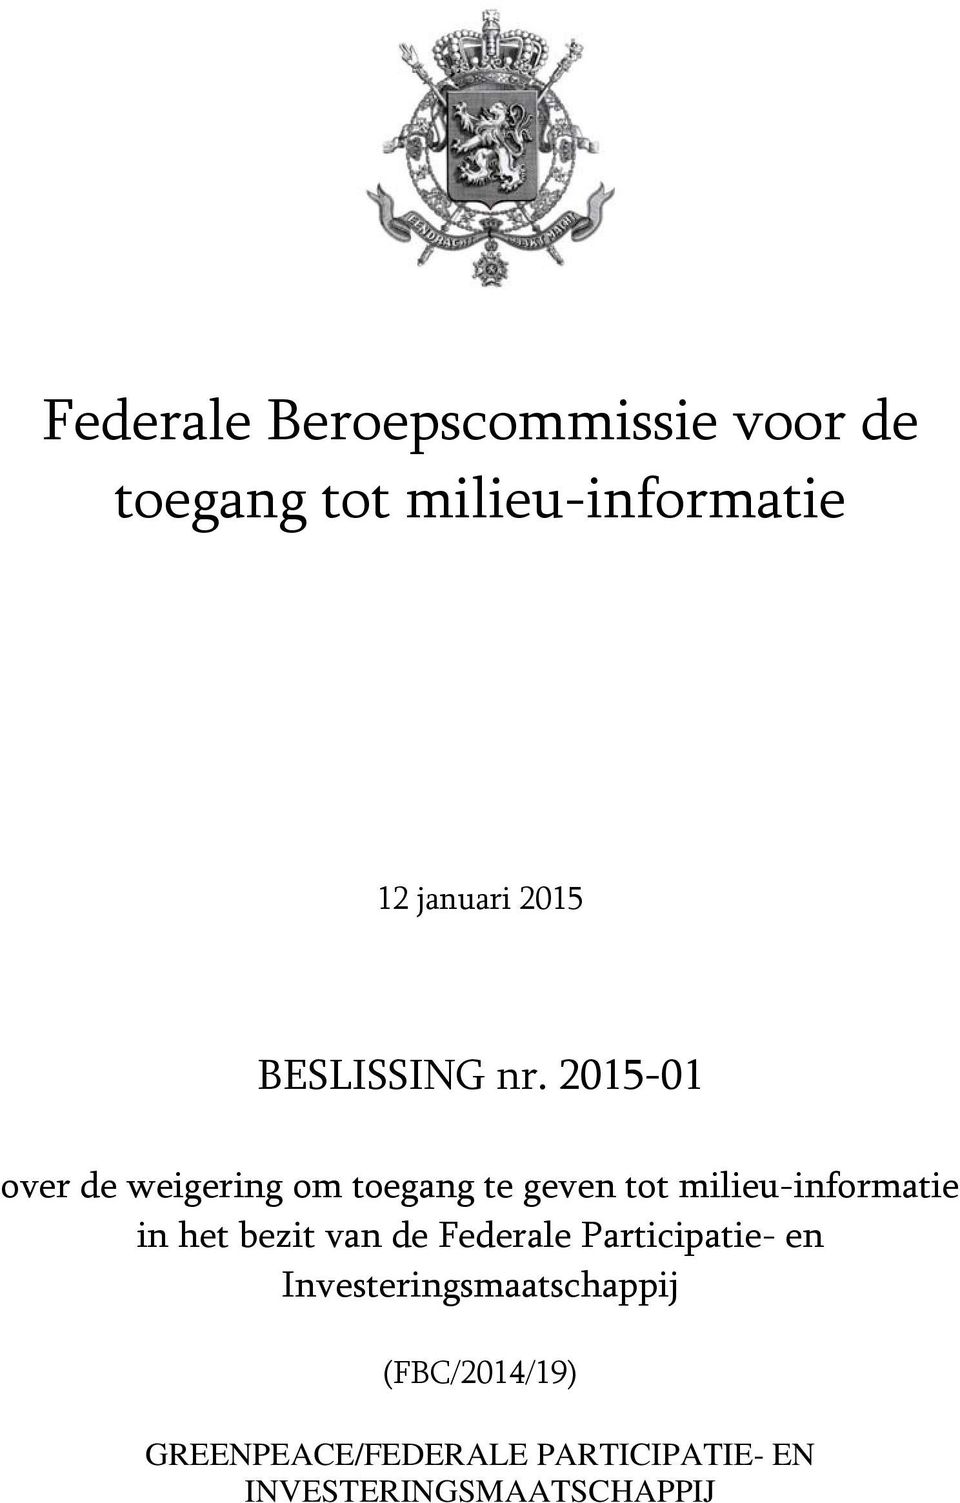 2015-01 over de weigering om toegang te geven tot milieu-informatie in het